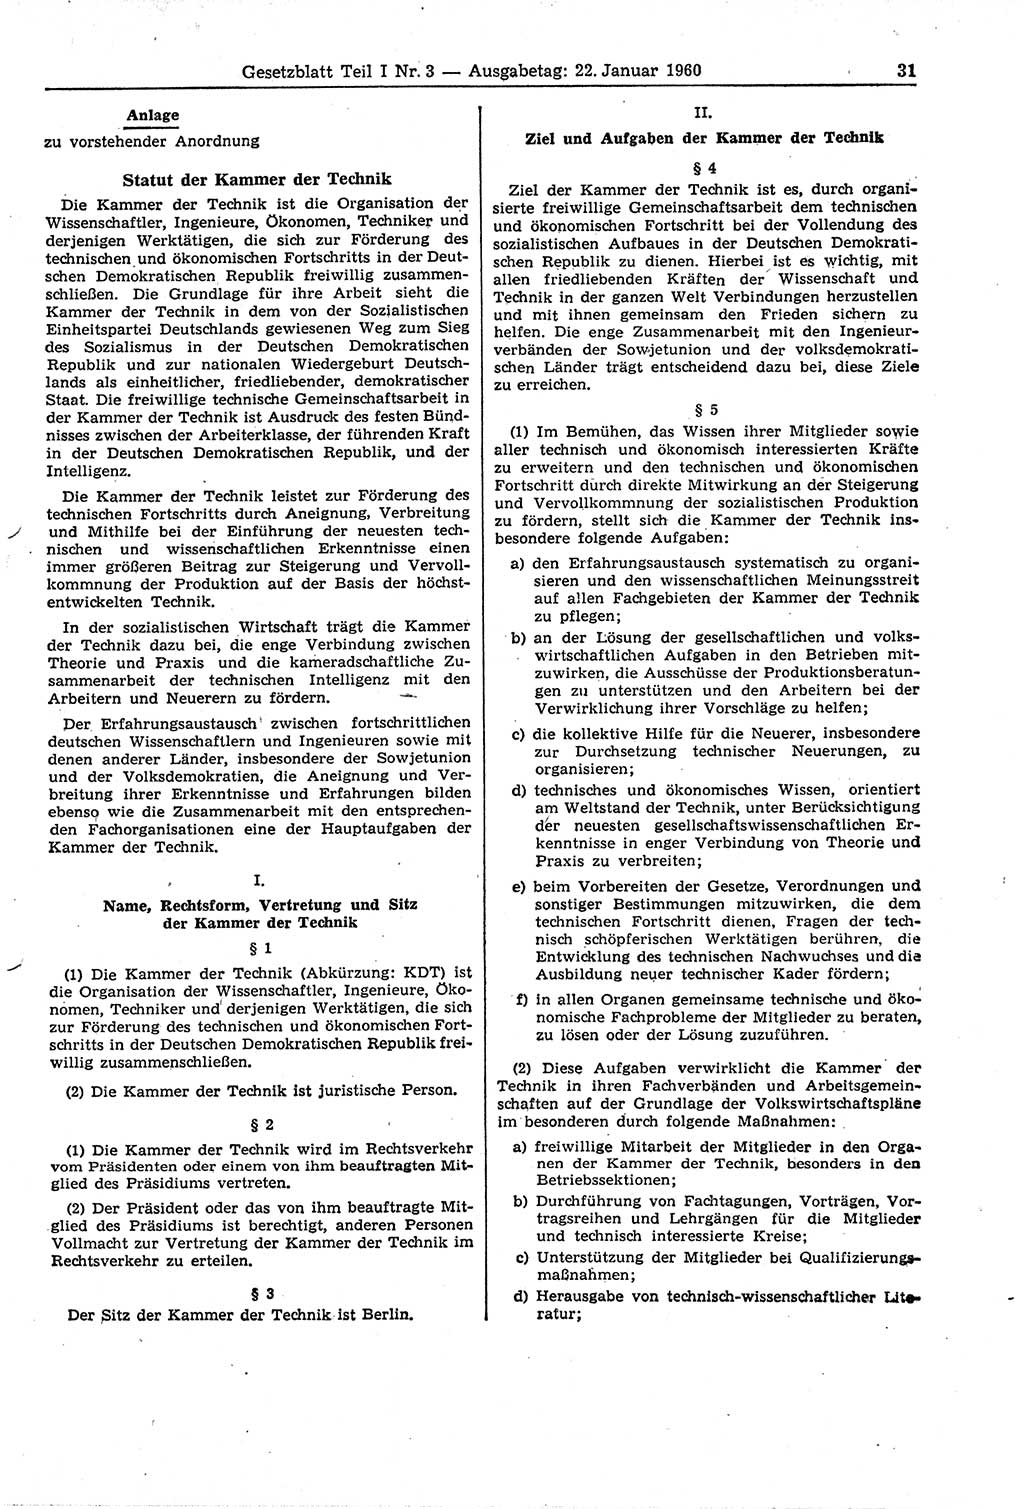 Gesetzblatt (GBl.) der Deutschen Demokratischen Republik (DDR) Teil Ⅰ 1960, Seite 31 (GBl. DDR Ⅰ 1960, S. 31)